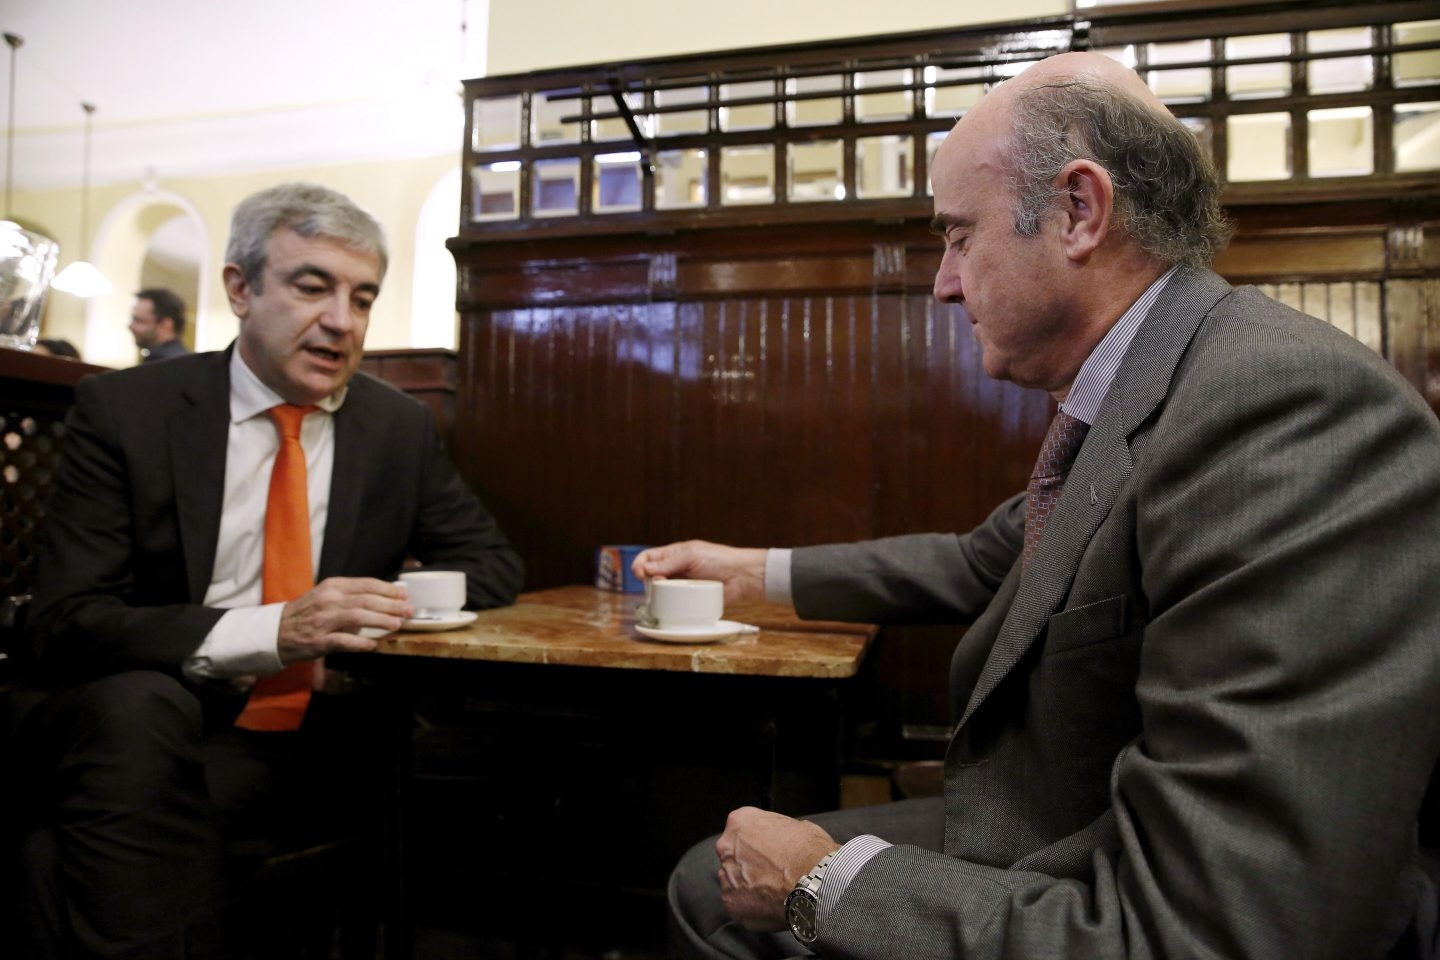 Luis Garicano y Luis de Guindos, en una cafetería junto al Congreso.